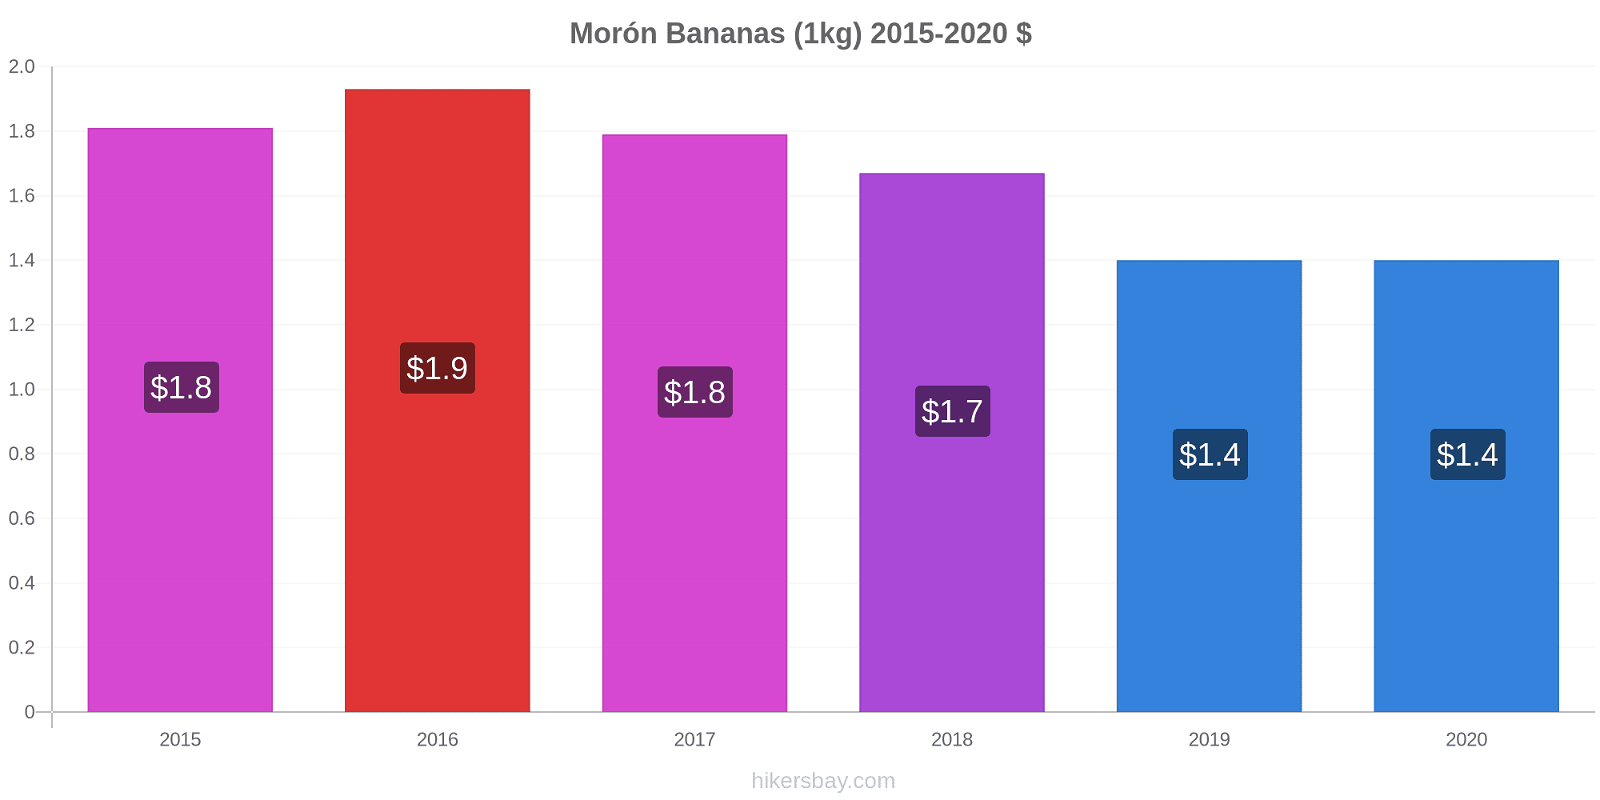 Morón variação de preço Banana (1kg) hikersbay.com